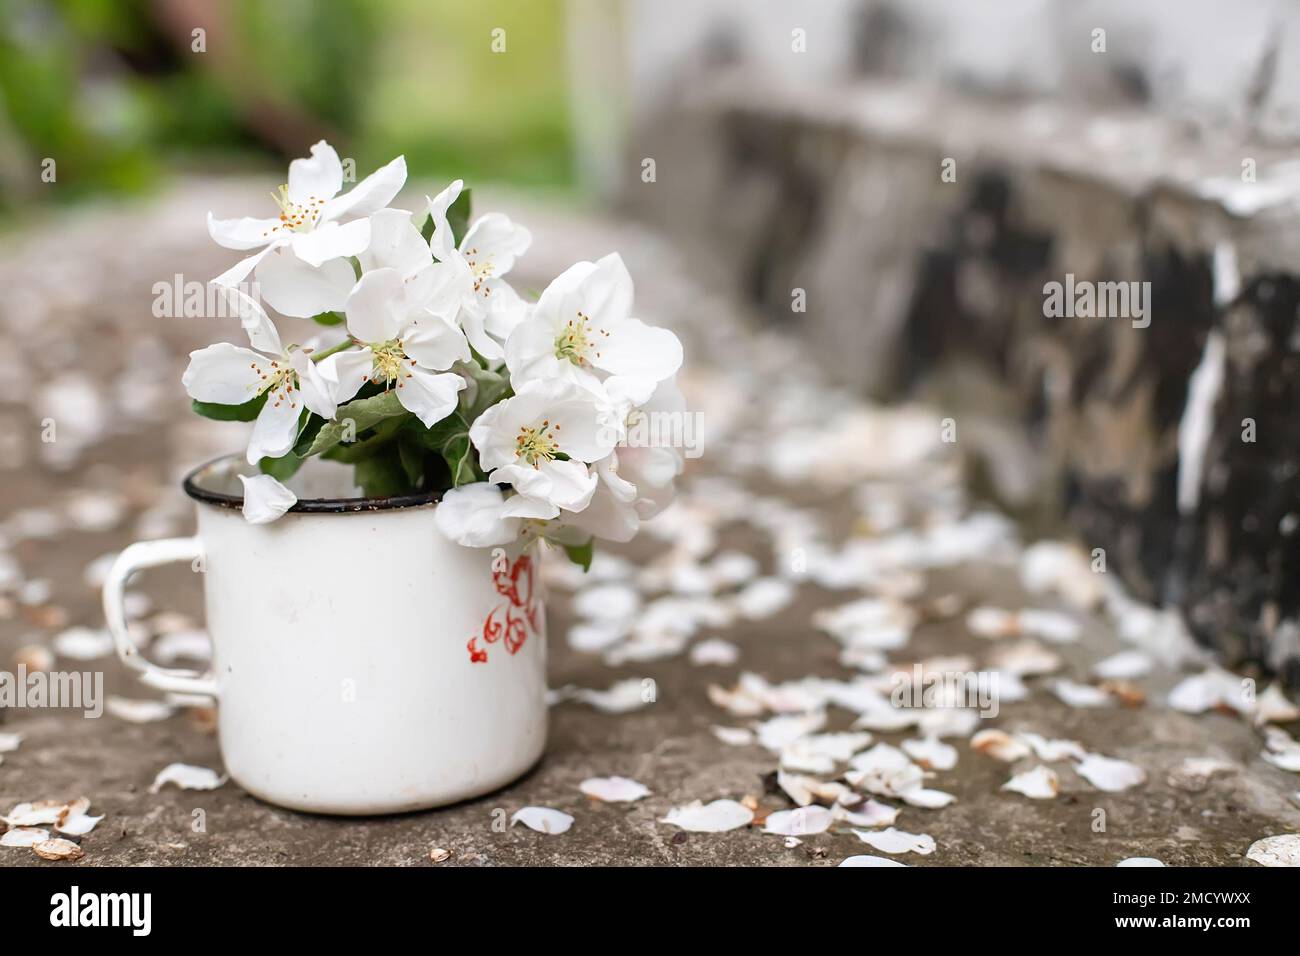 Vita morta con tazza e bouquet di rami con fiori di mela. Petali bianchi di alberi fioriti caduti su cemento. Foto Stock